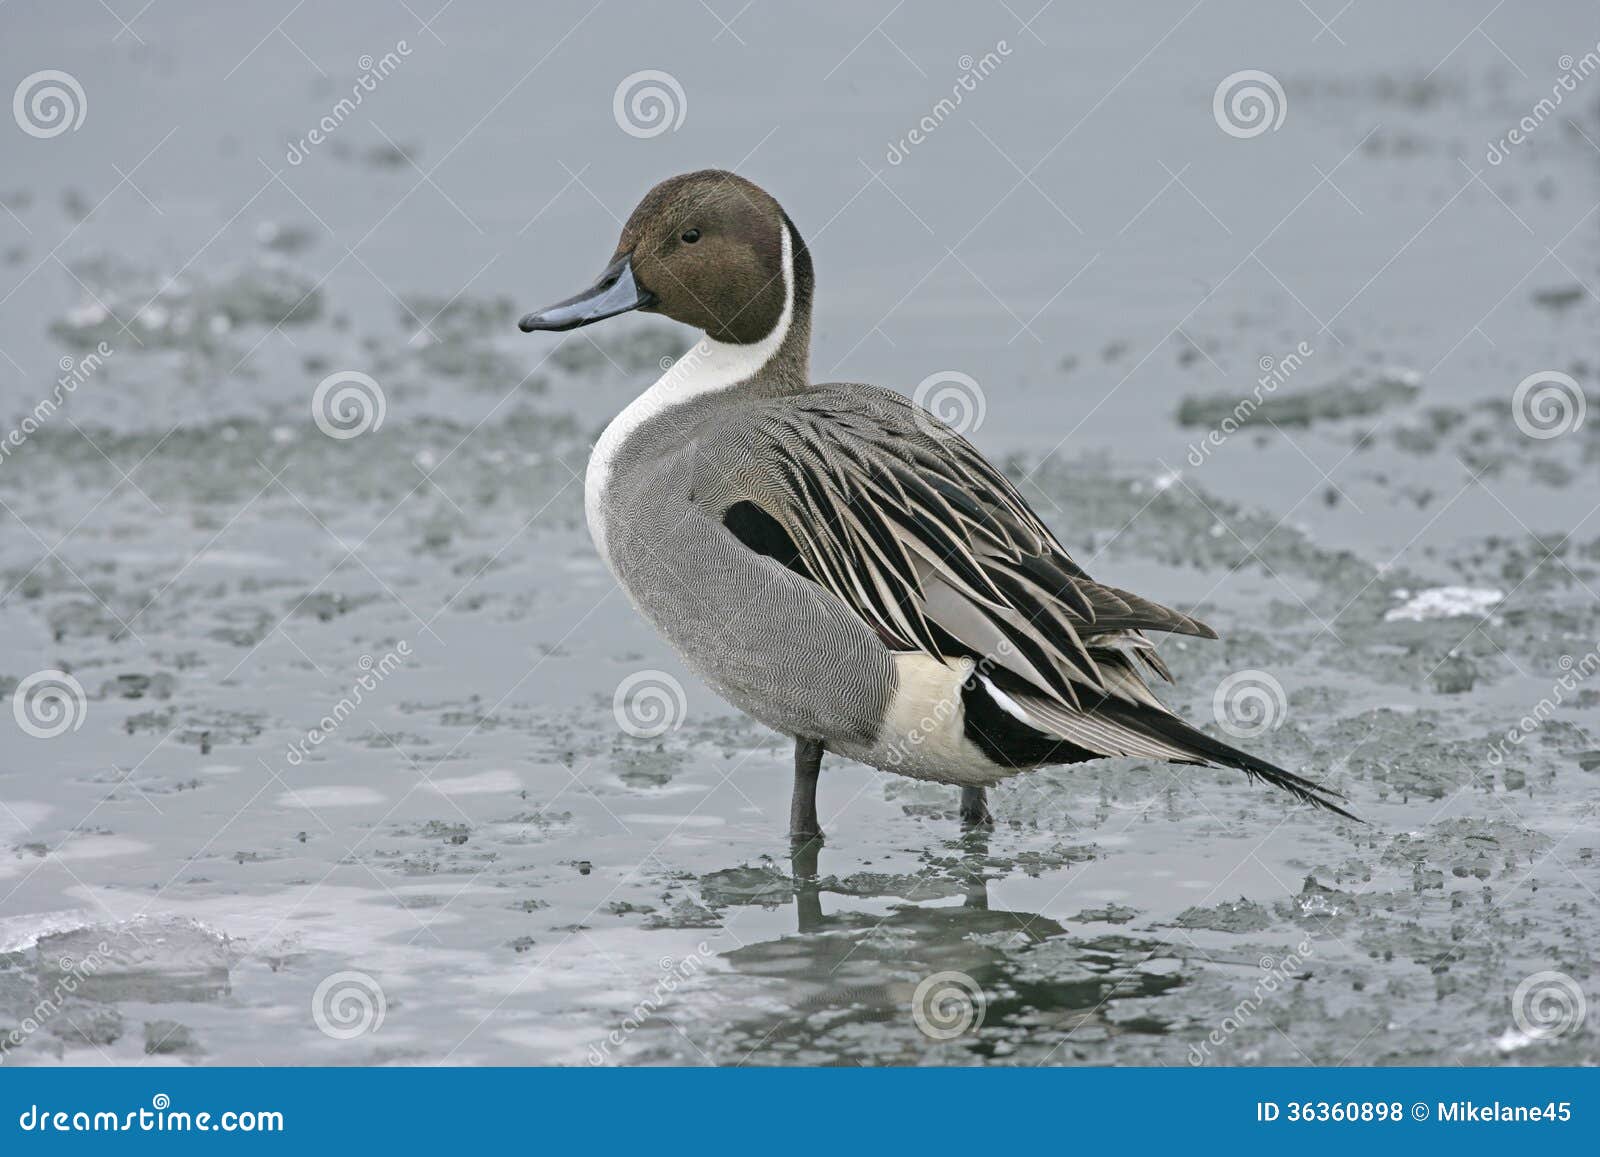 加拿大鹅 库存照片. 图片 包括有 野禽, 飞行, 鸟舍, 加拿大 - 31416846